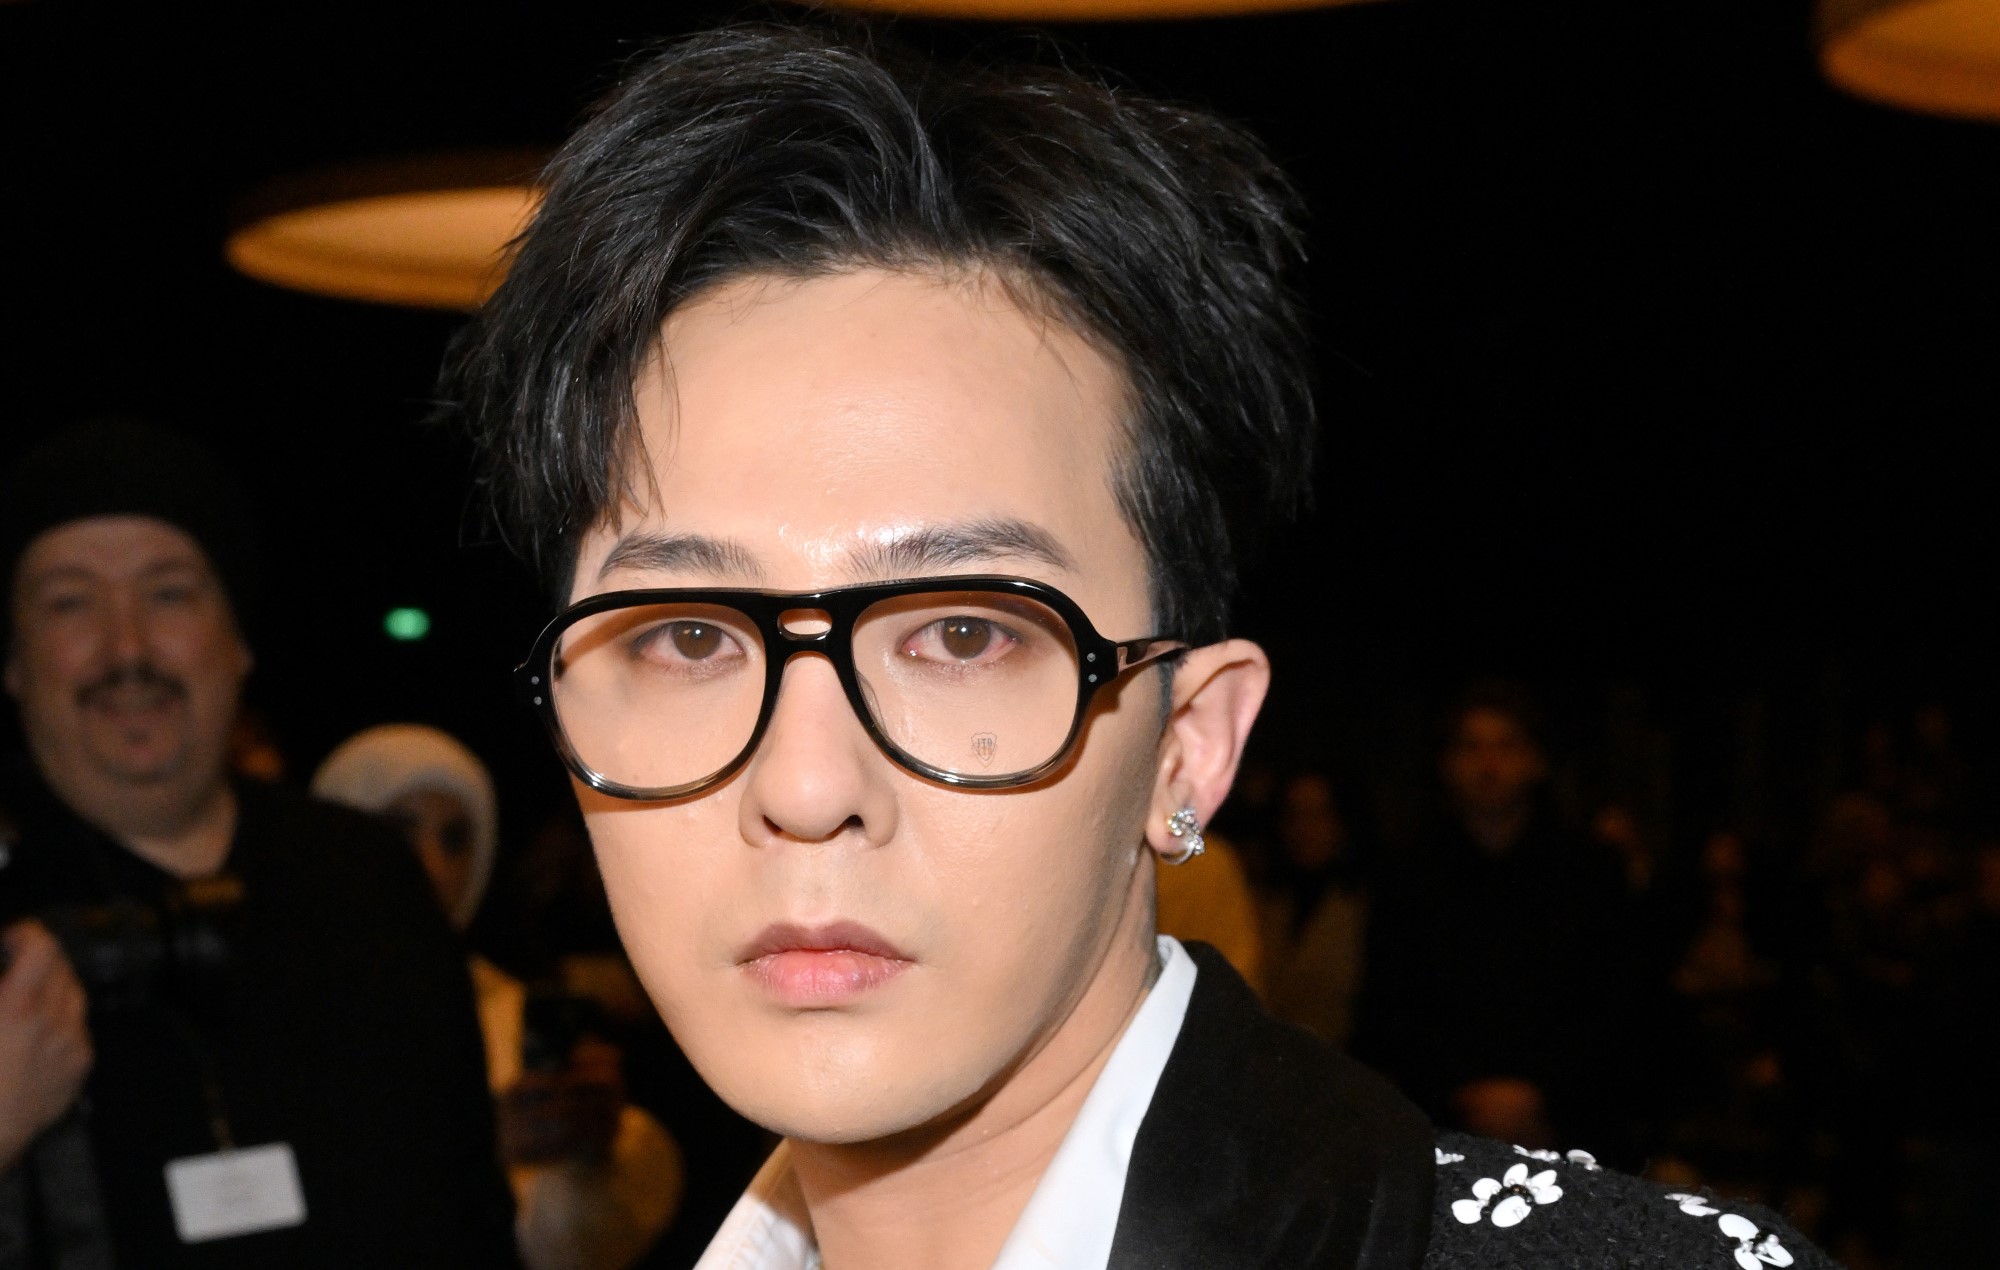 Big Bang’s G-Dragon denies drug allegations: “I’ve never used drugs”